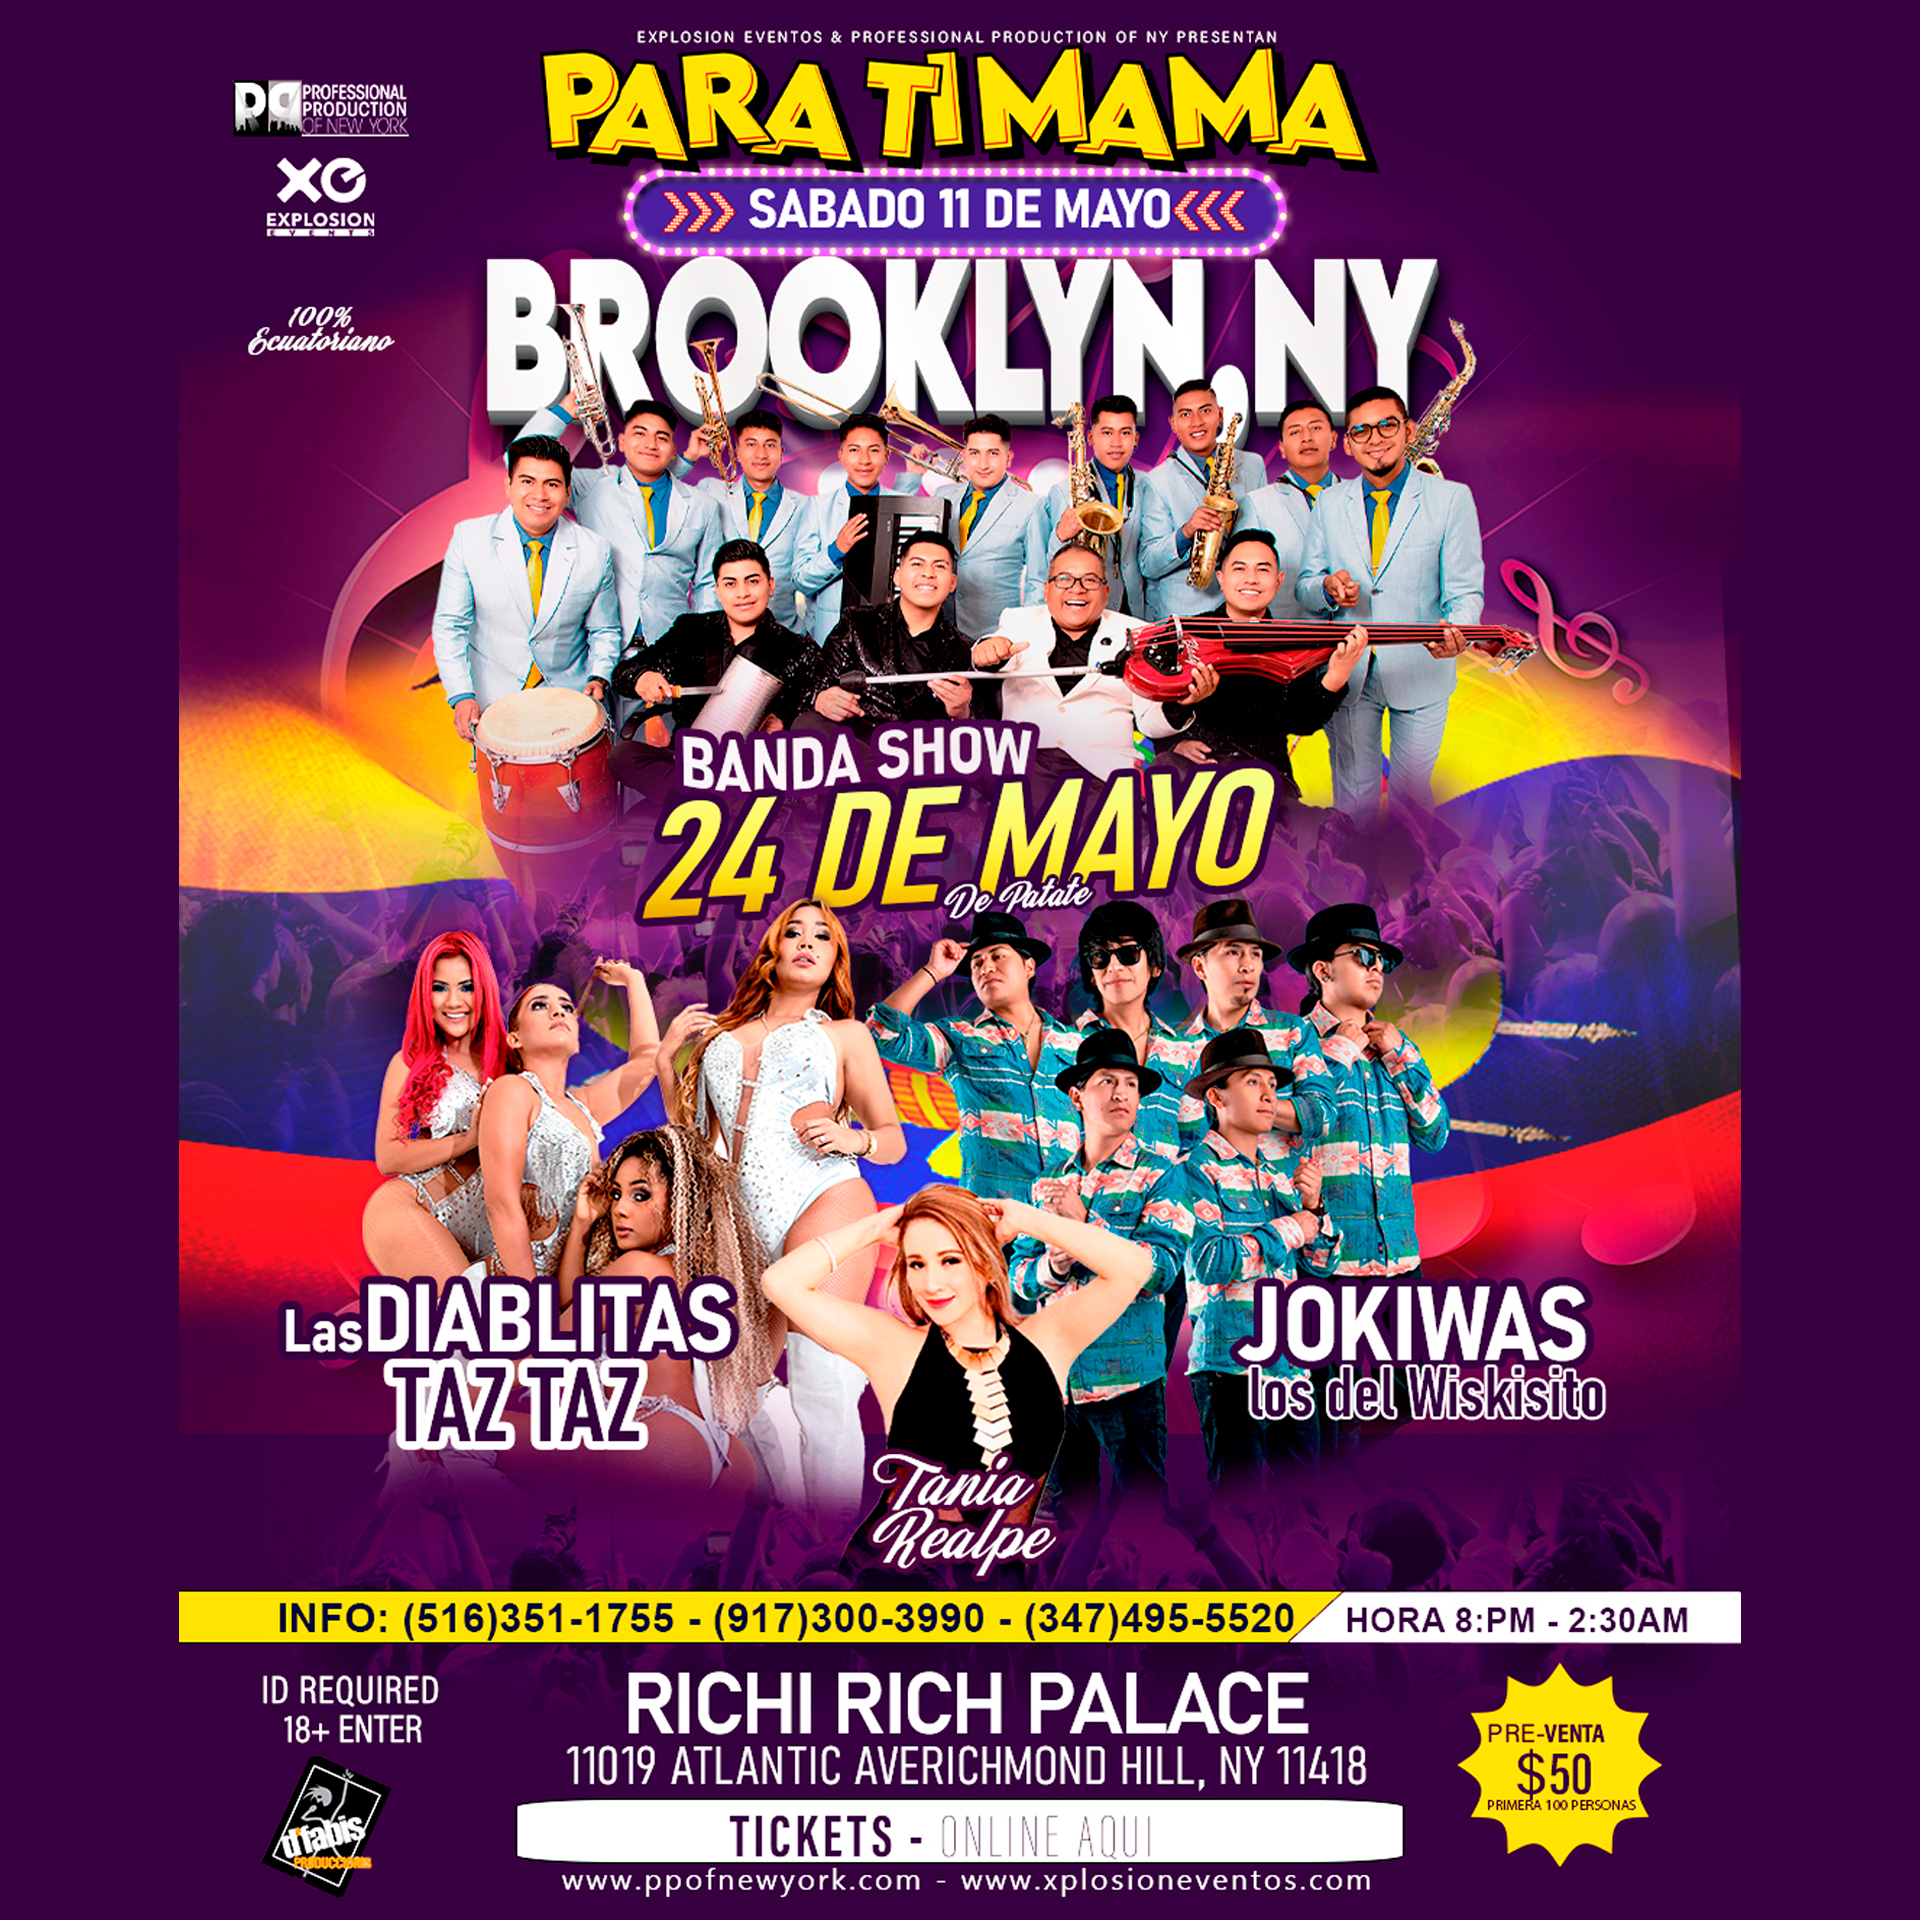 Brooklyn,NY para ti mama!! La Banda 24 de Mayo,Jokiwas, Tania Realpe y mas sorpresas..